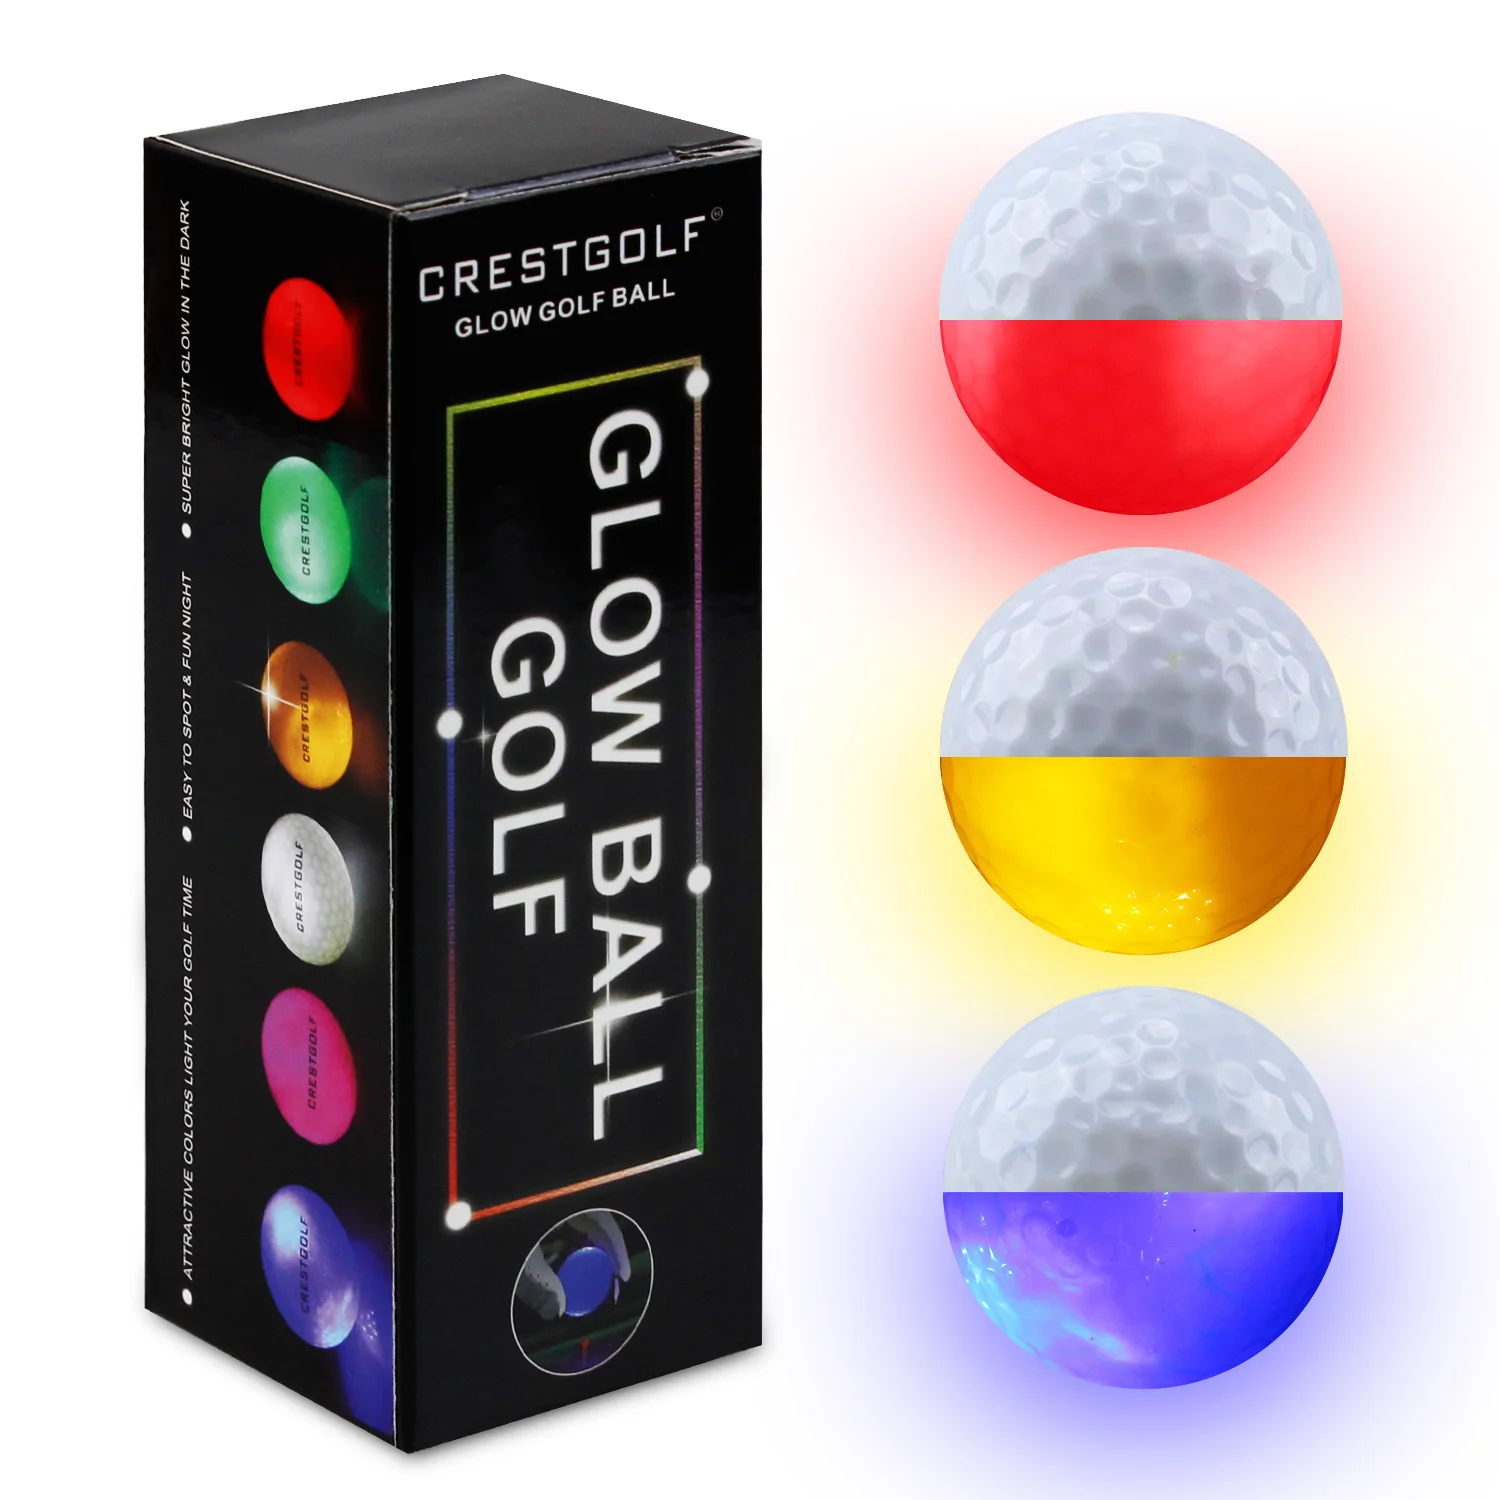 3 шт. в упаковке CRESTGOLF Hi-Q USGA светодиодные мячи для гольфа для ночных тренировок Роскошные мячи для игры в гольф 6 цветов